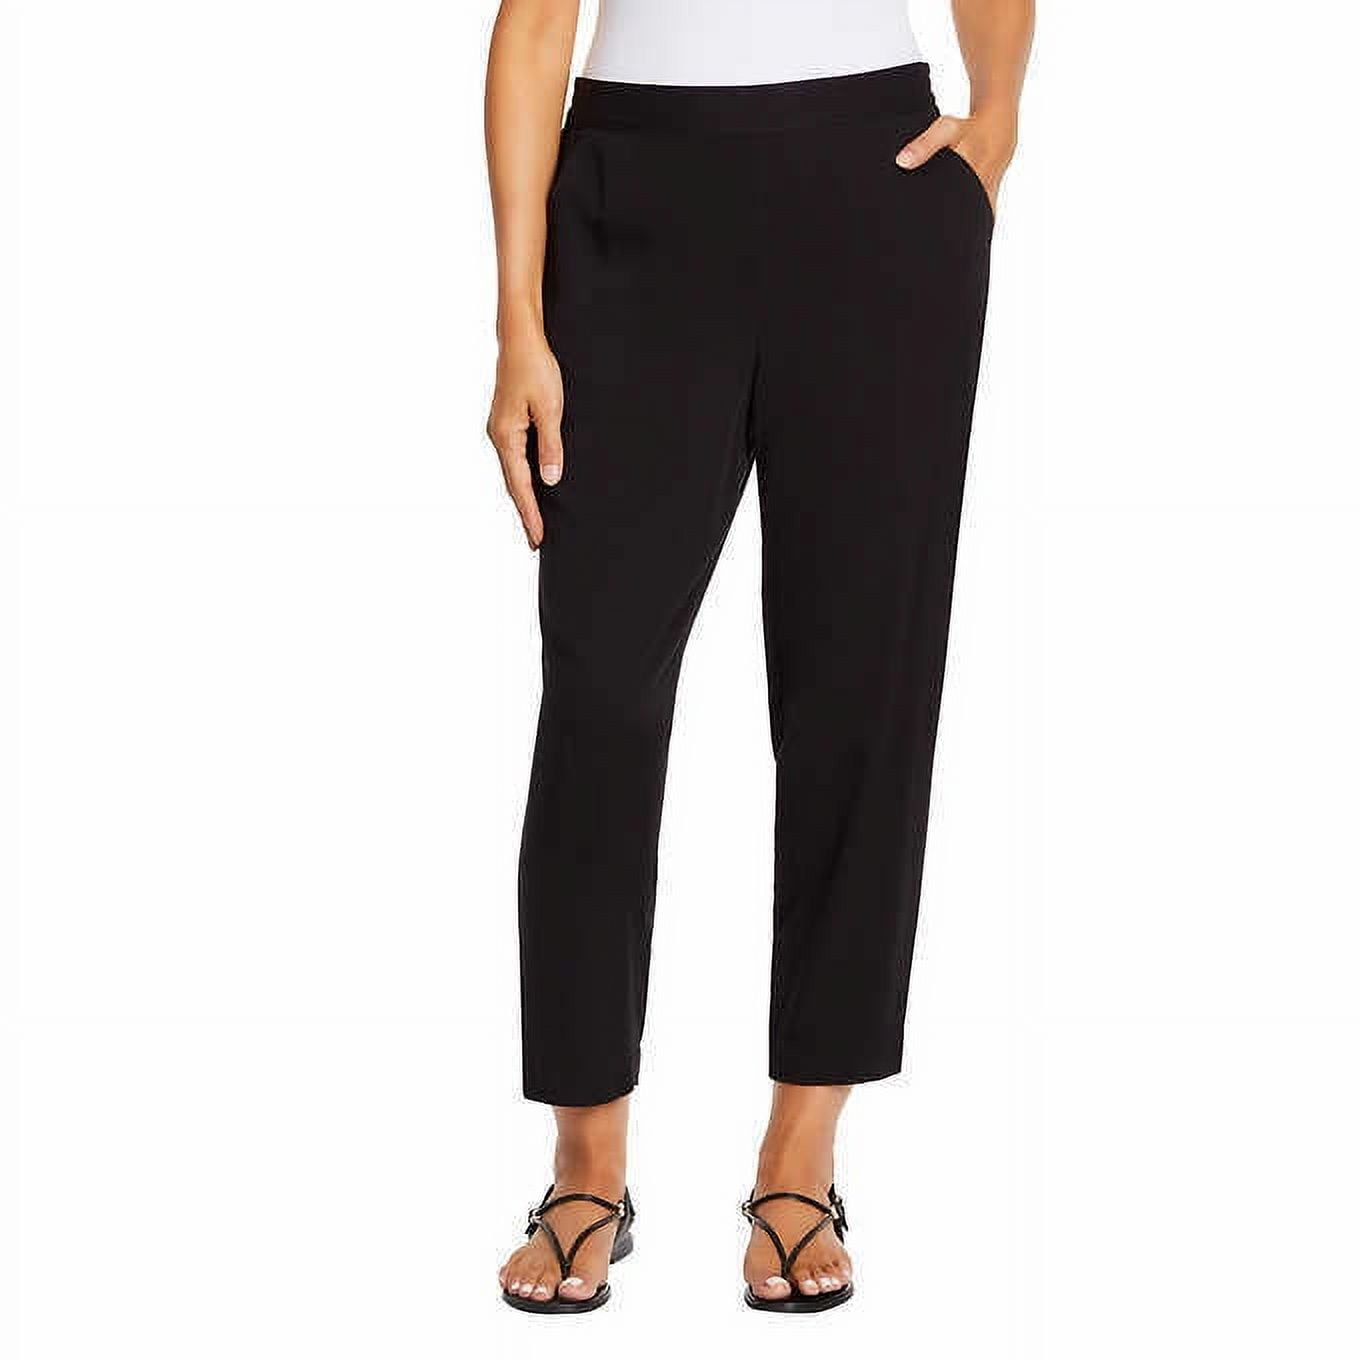 Jessica Simpson Ladies' Printed Pull-on Pant (Black, Small